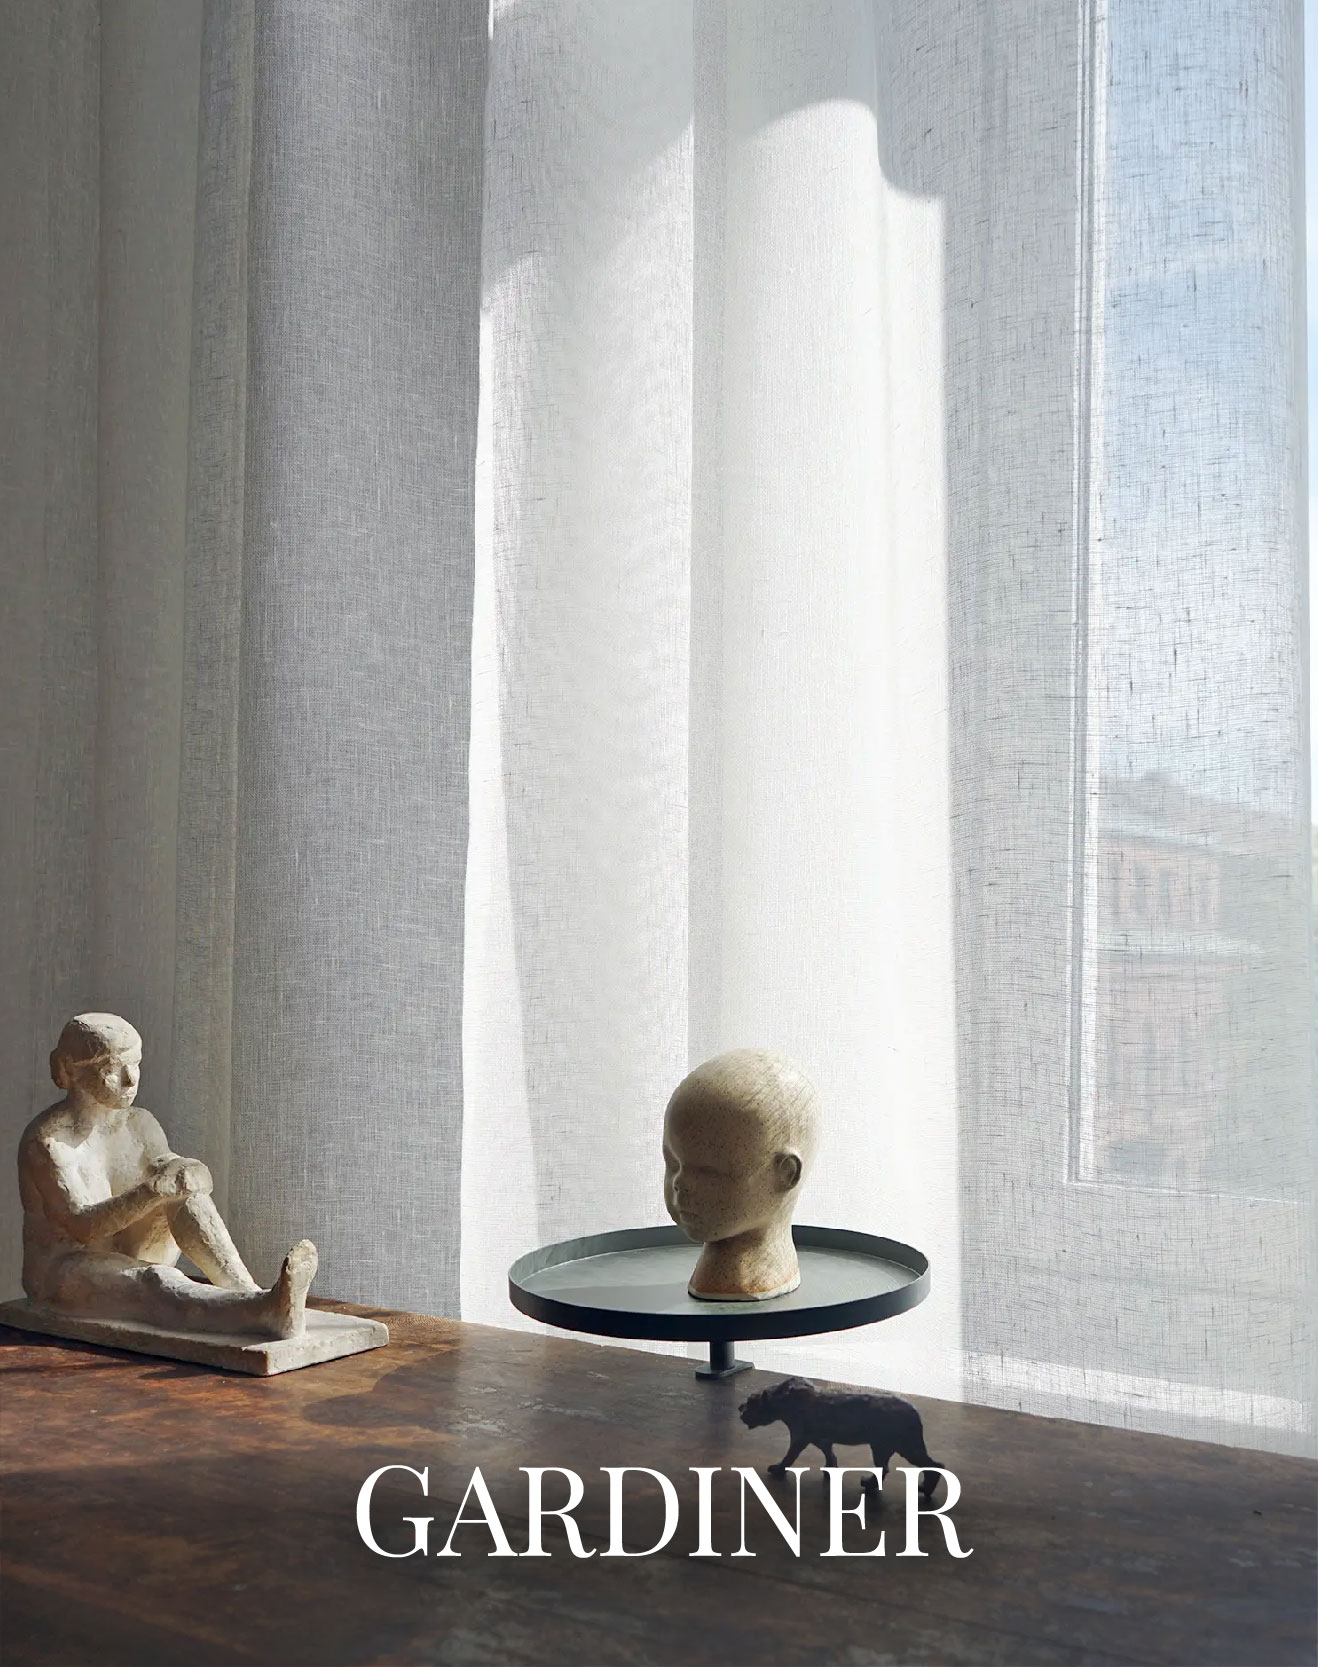 Gardiner vävda av Klässbols Linneväveri. I fönstret står även två vita skulpturer.